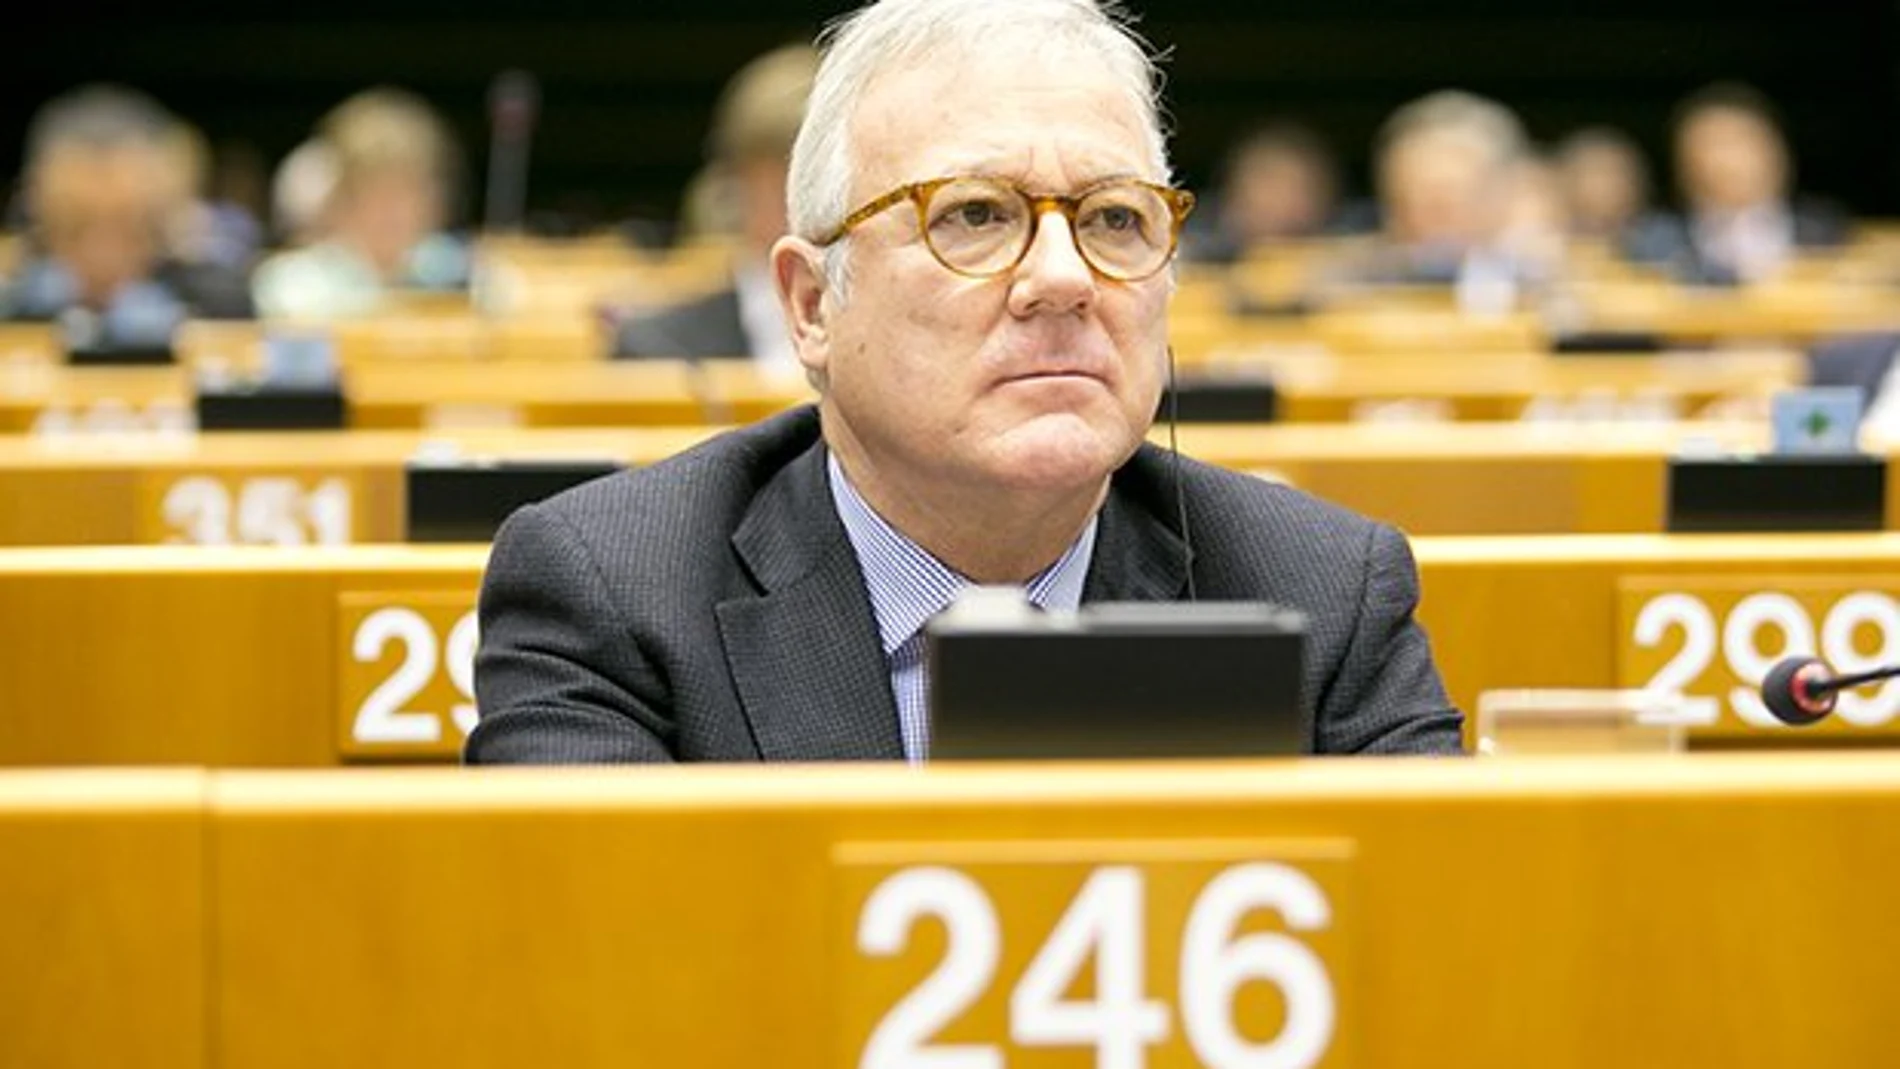 El eurodiputado del PP y vicepresidente del Parlamento Europeo, Ramón Luis Valcárcel, en un pleno en Bruselas